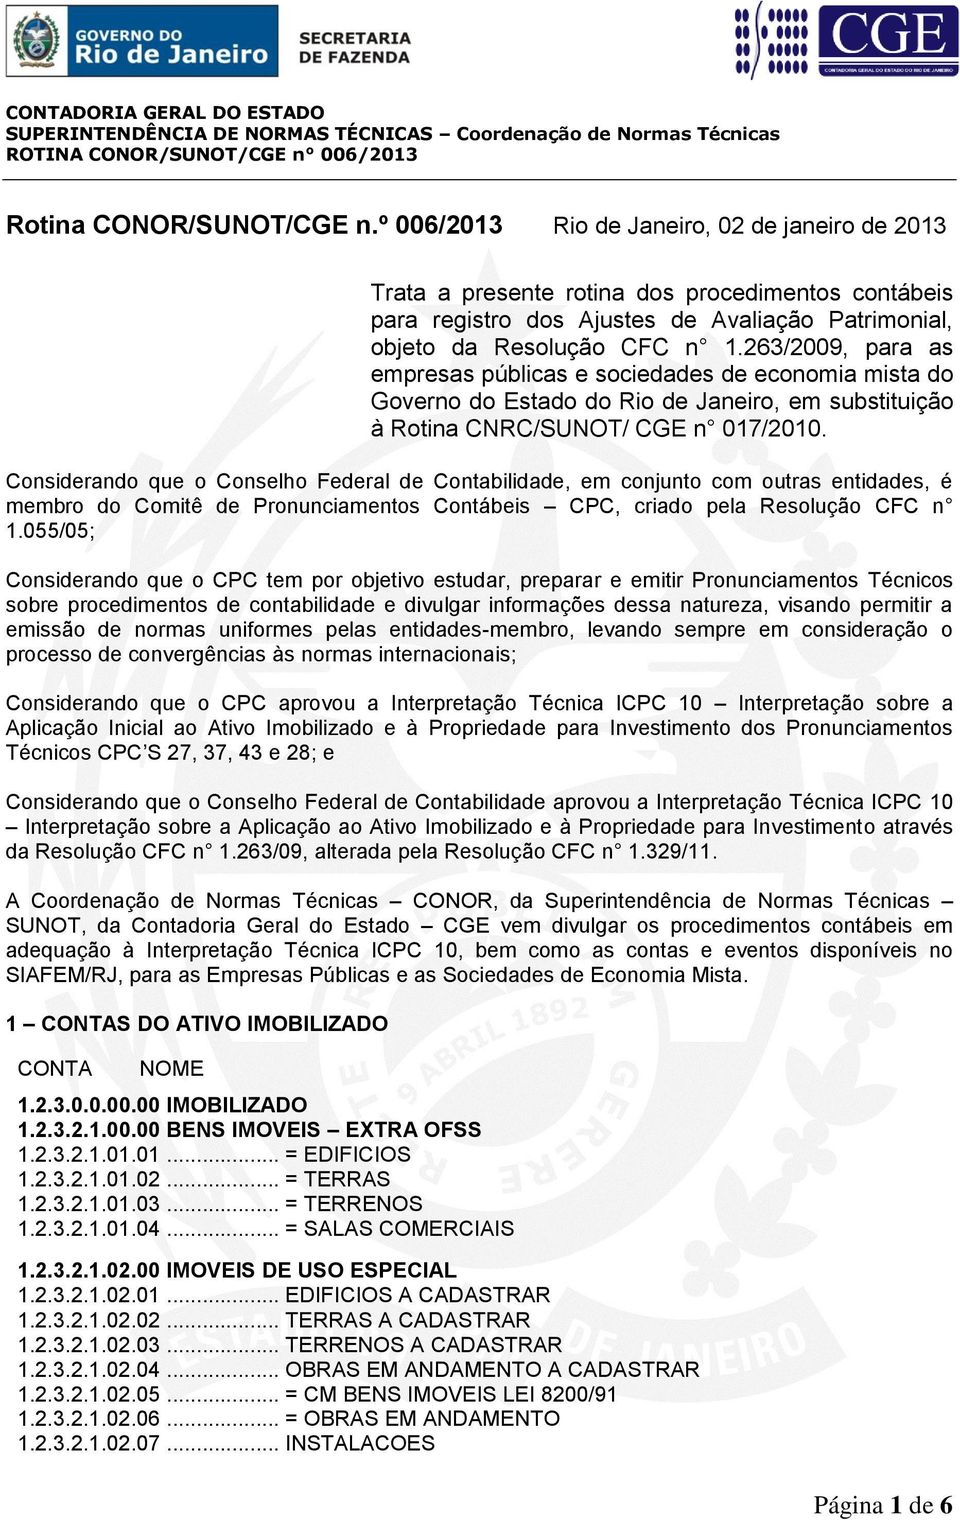 263/2009, para as empresas públicas e sociedades de economia mista do Governo do Estado do Rio de Janeiro, em substituição à Rotina CNRC/SUNOT/ CGE n 017/2010.